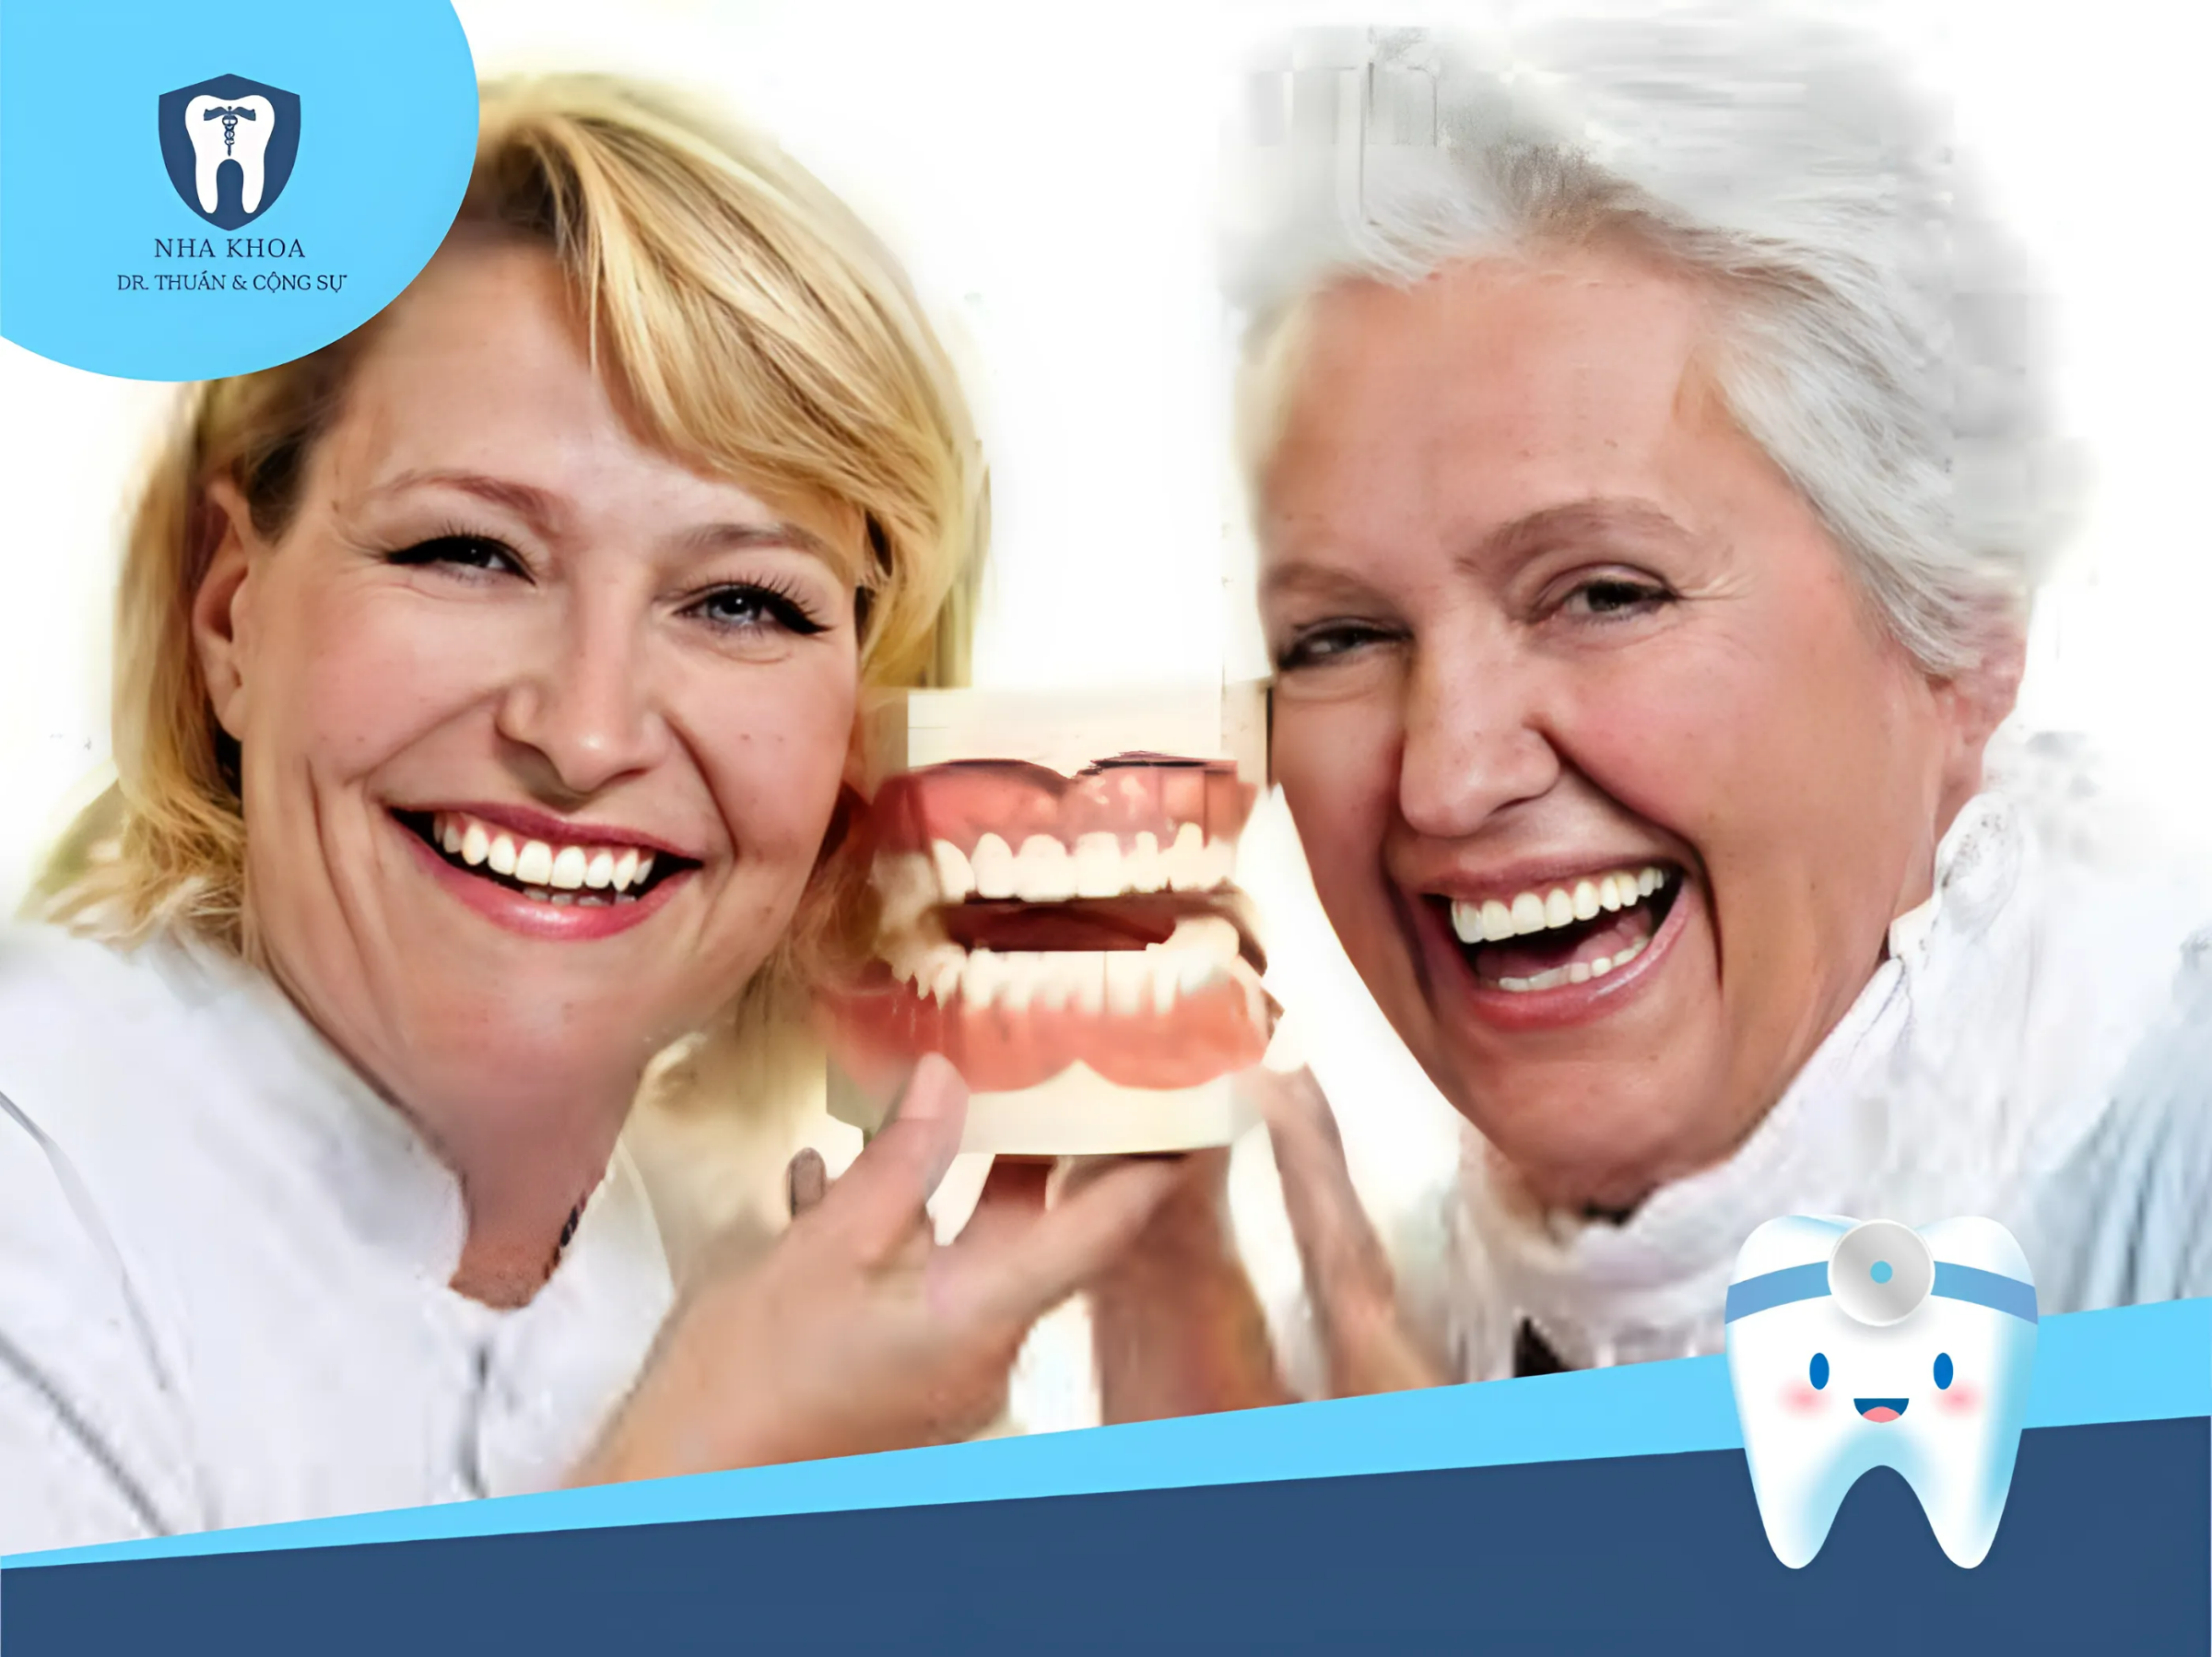 Hàm răng giả tháo lắp góp phần giúp khuôn mặt và nụ cười đẹp hơn. Khả năng ăn nhai tốt hơn, người bệnh cũng nói được rõ ràng hơn.